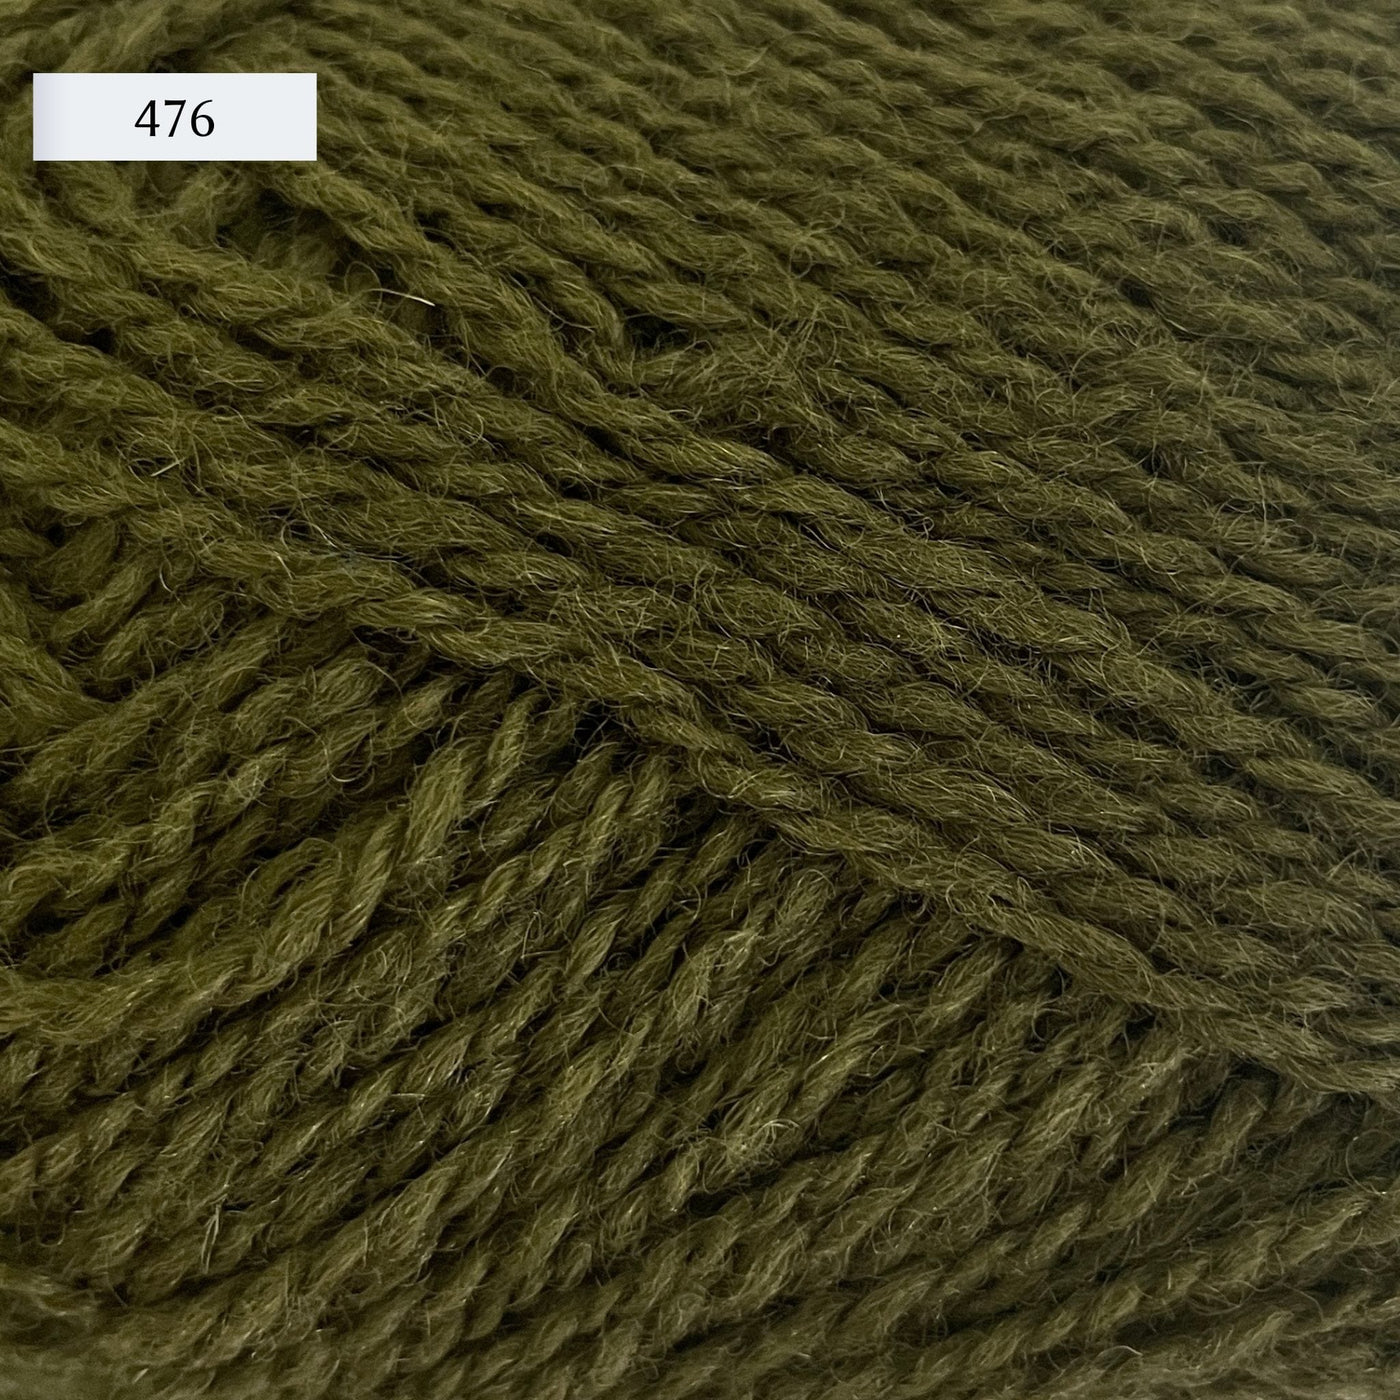 Rauma Finullgarn, a fingering/sport weight yarn, in color 476, a medium army green